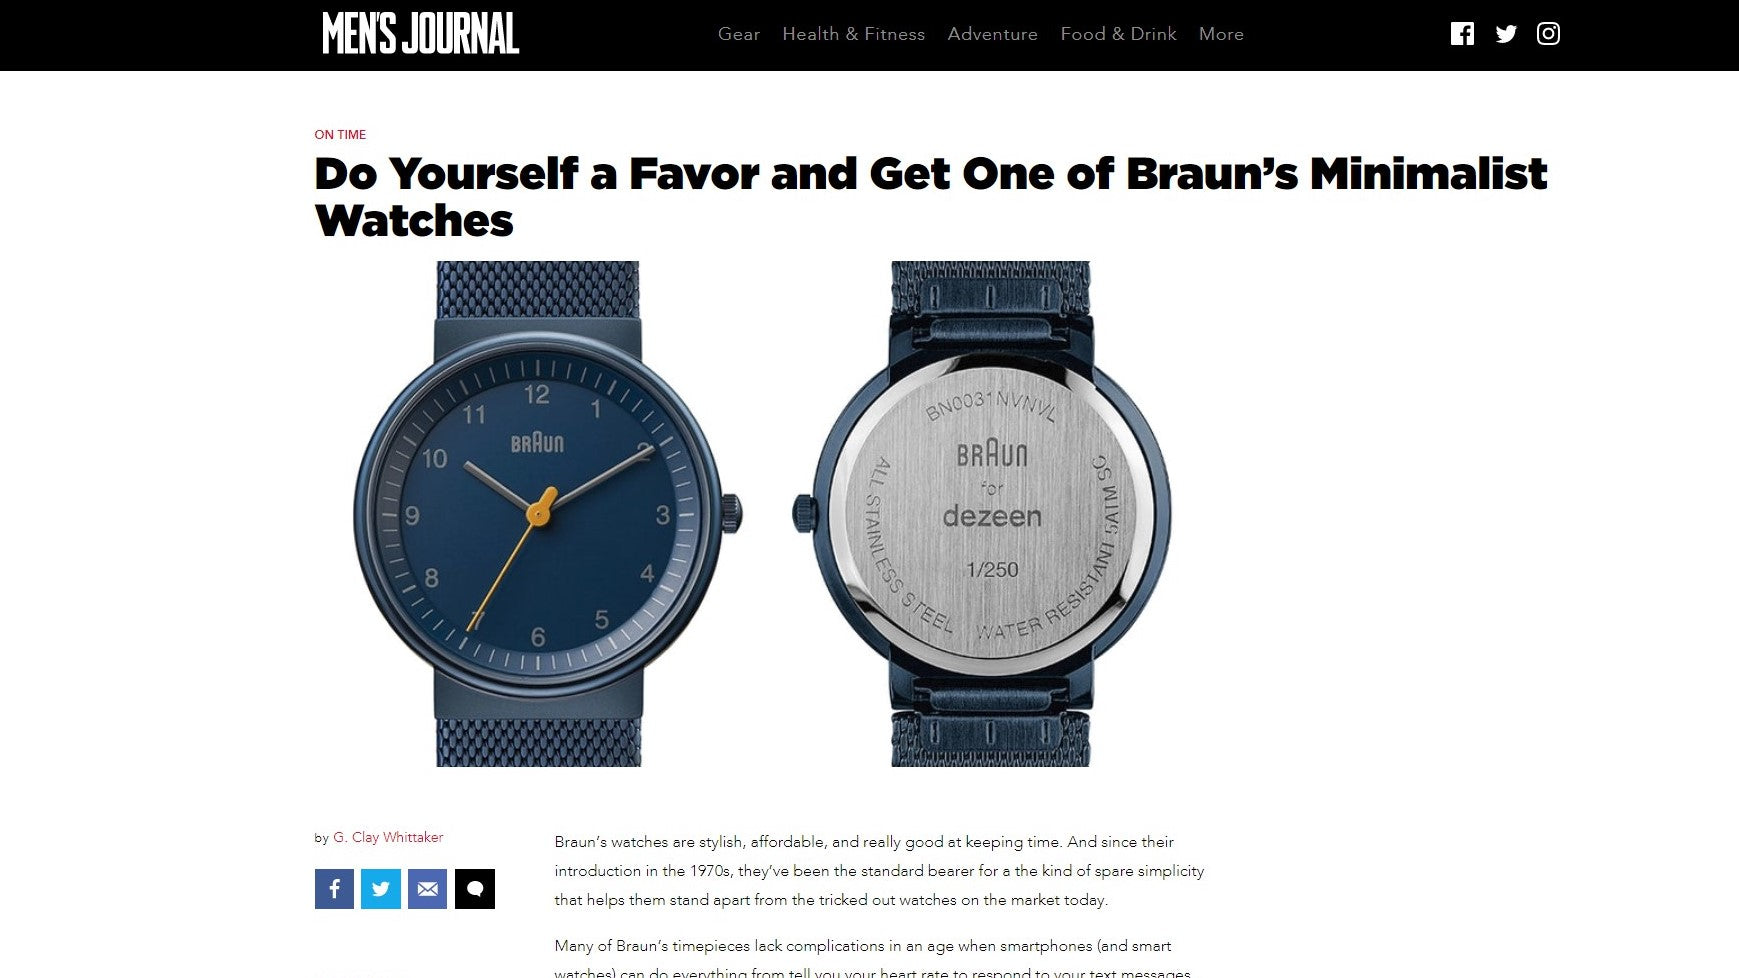 Get one of Braun's minimalist watches